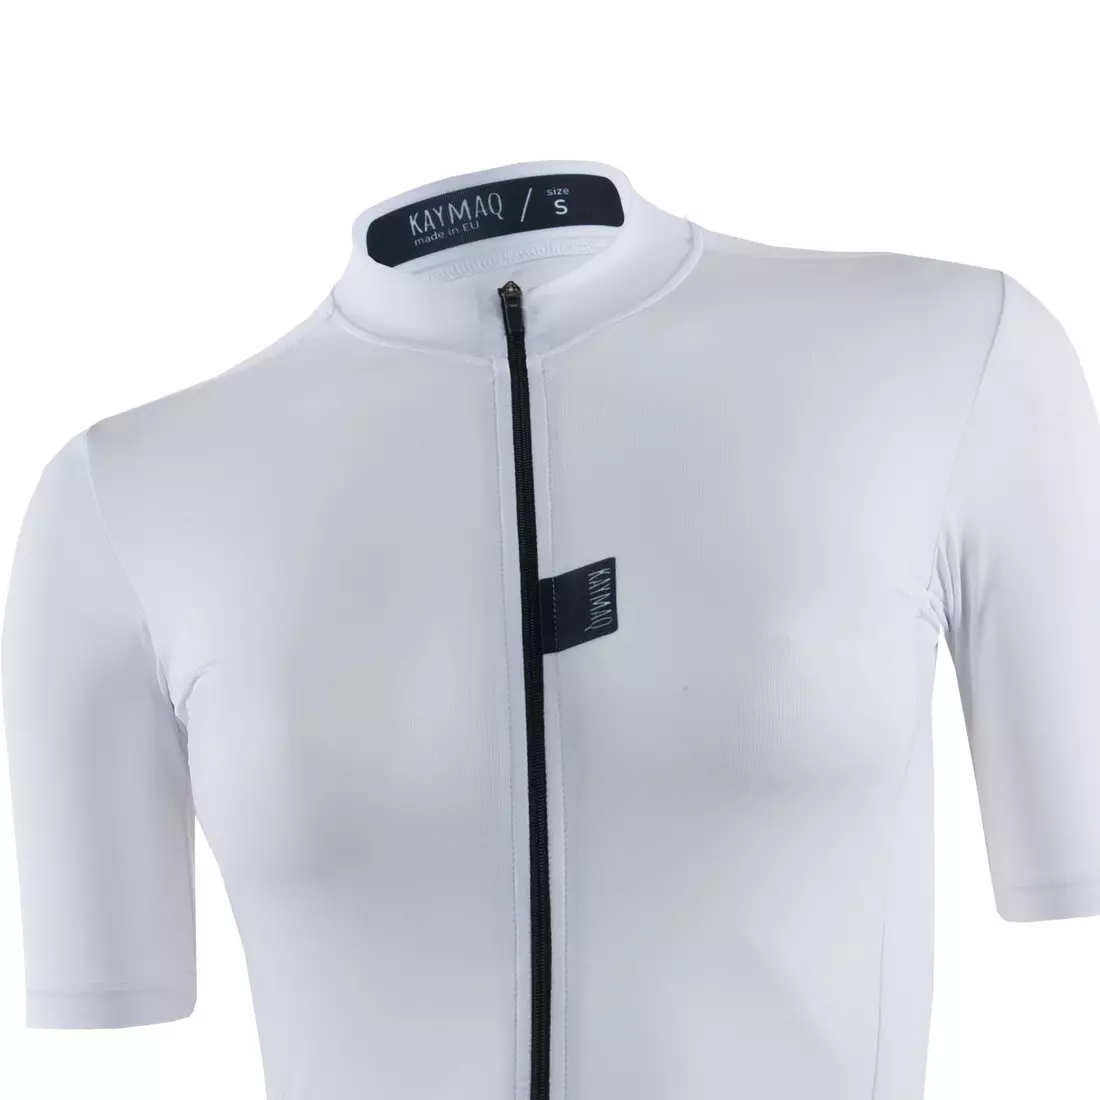 KAYMAQ dámský cyklistické dres krátký rukáv bílá KYQ-SS-2001-1